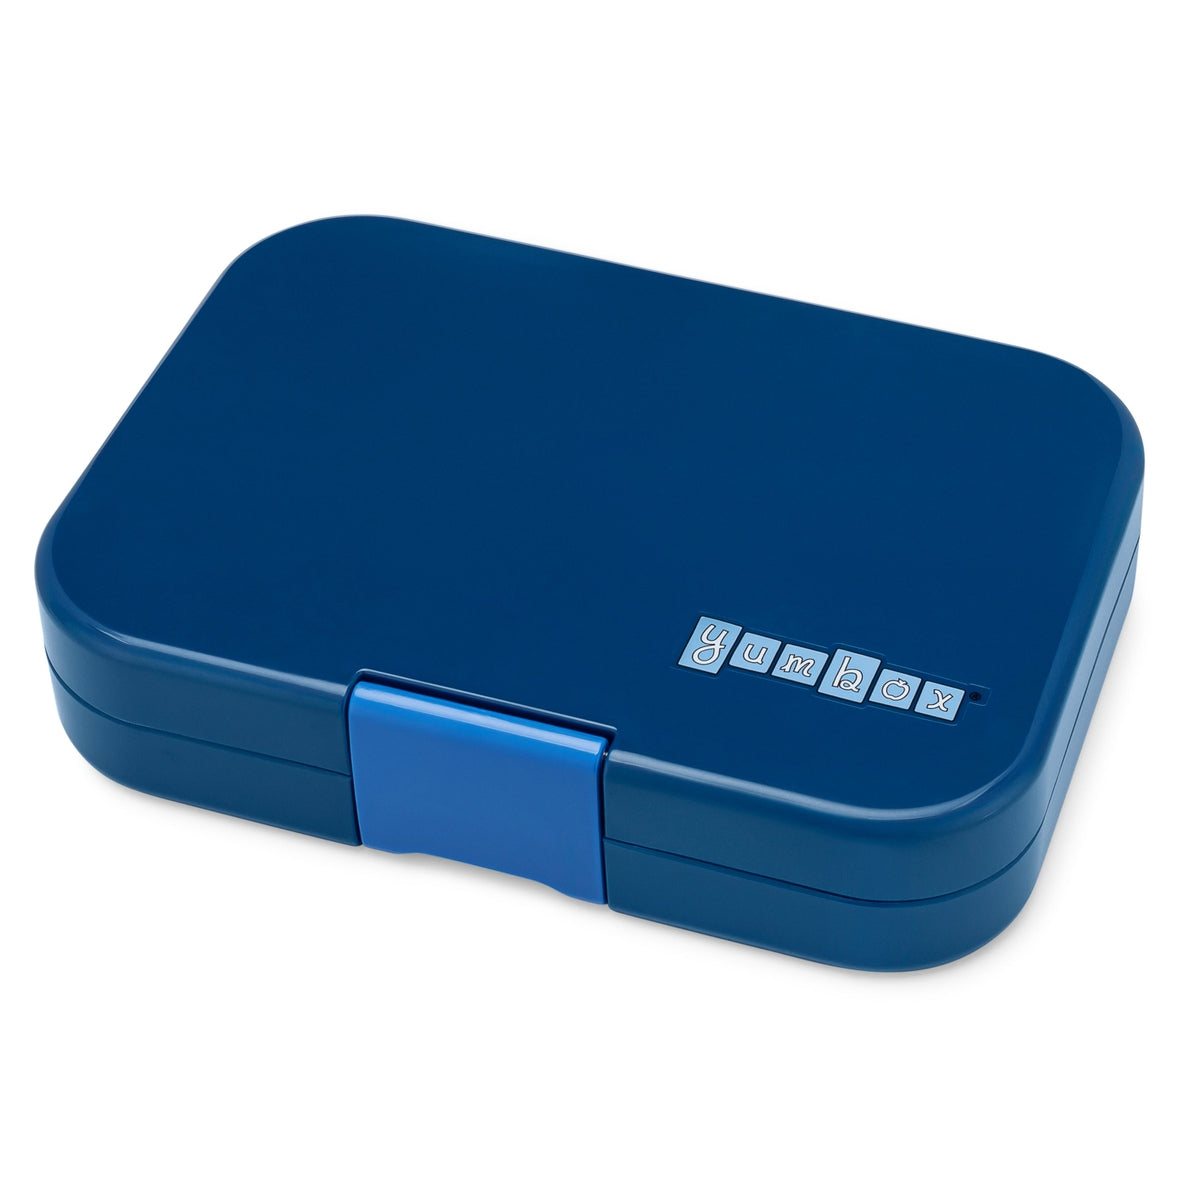 Leakproof Sandwich Friendly Bento Box - Monte Carlo Blue